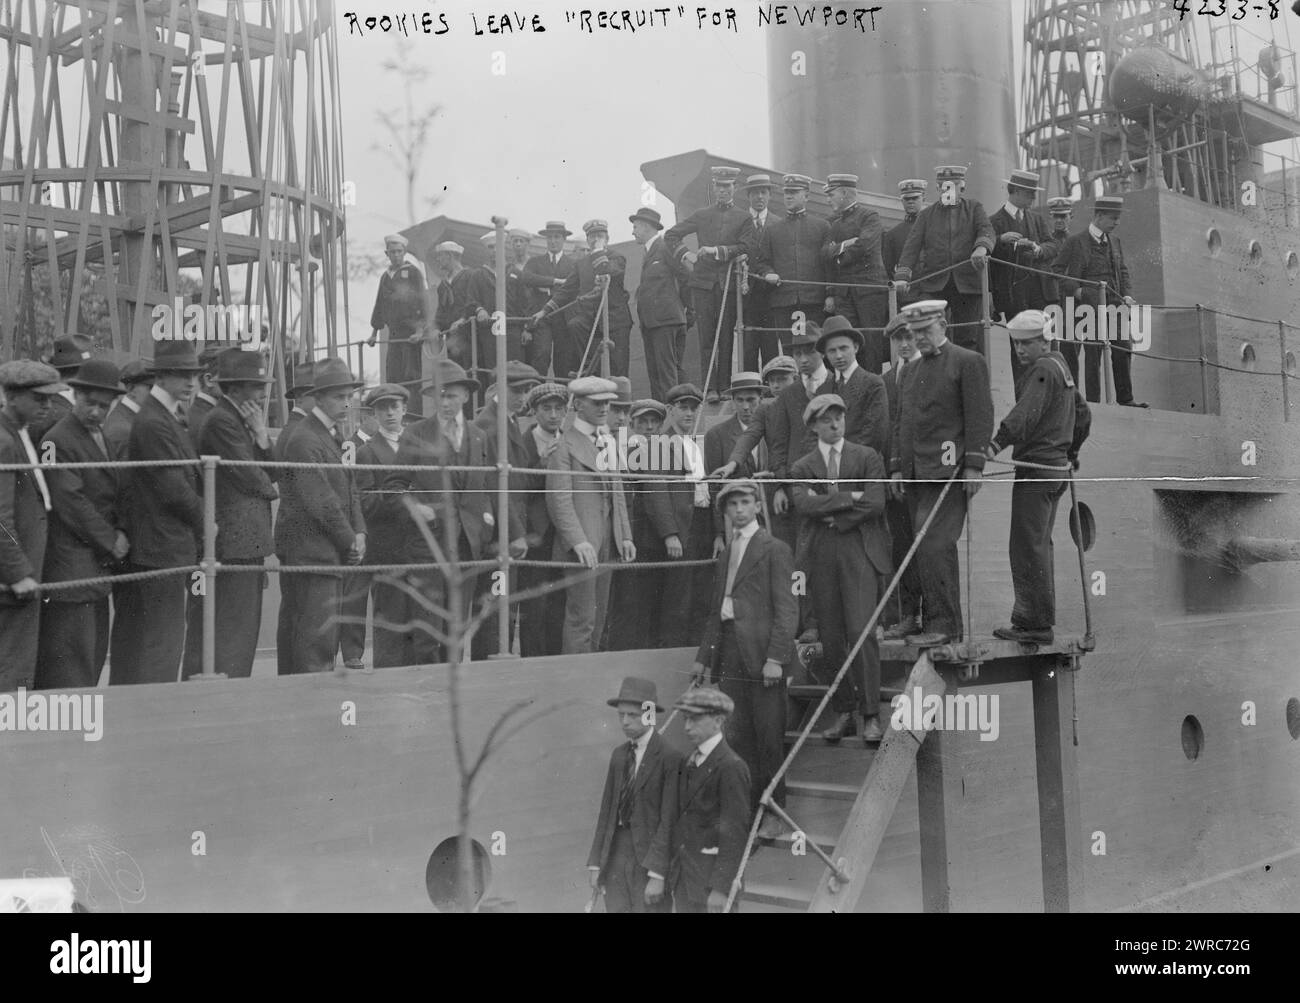 Les recrues quittent UNE RECRUE pour Newport, la photographie montre des recrues de la Navy débarquant de l'U.S.S. Recruit, un faux cuirassé construit à Union Square, New York City par la Navy pour recruter des marins et vendre des Liberty Bonds pendant la première Guerre mondiale Les hommes partent pour l'entraînement à Newport, Rhode Island., 1917, Guerre mondiale, 1914-1918, négatifs en verre, 1 négatif : verre Banque D'Images